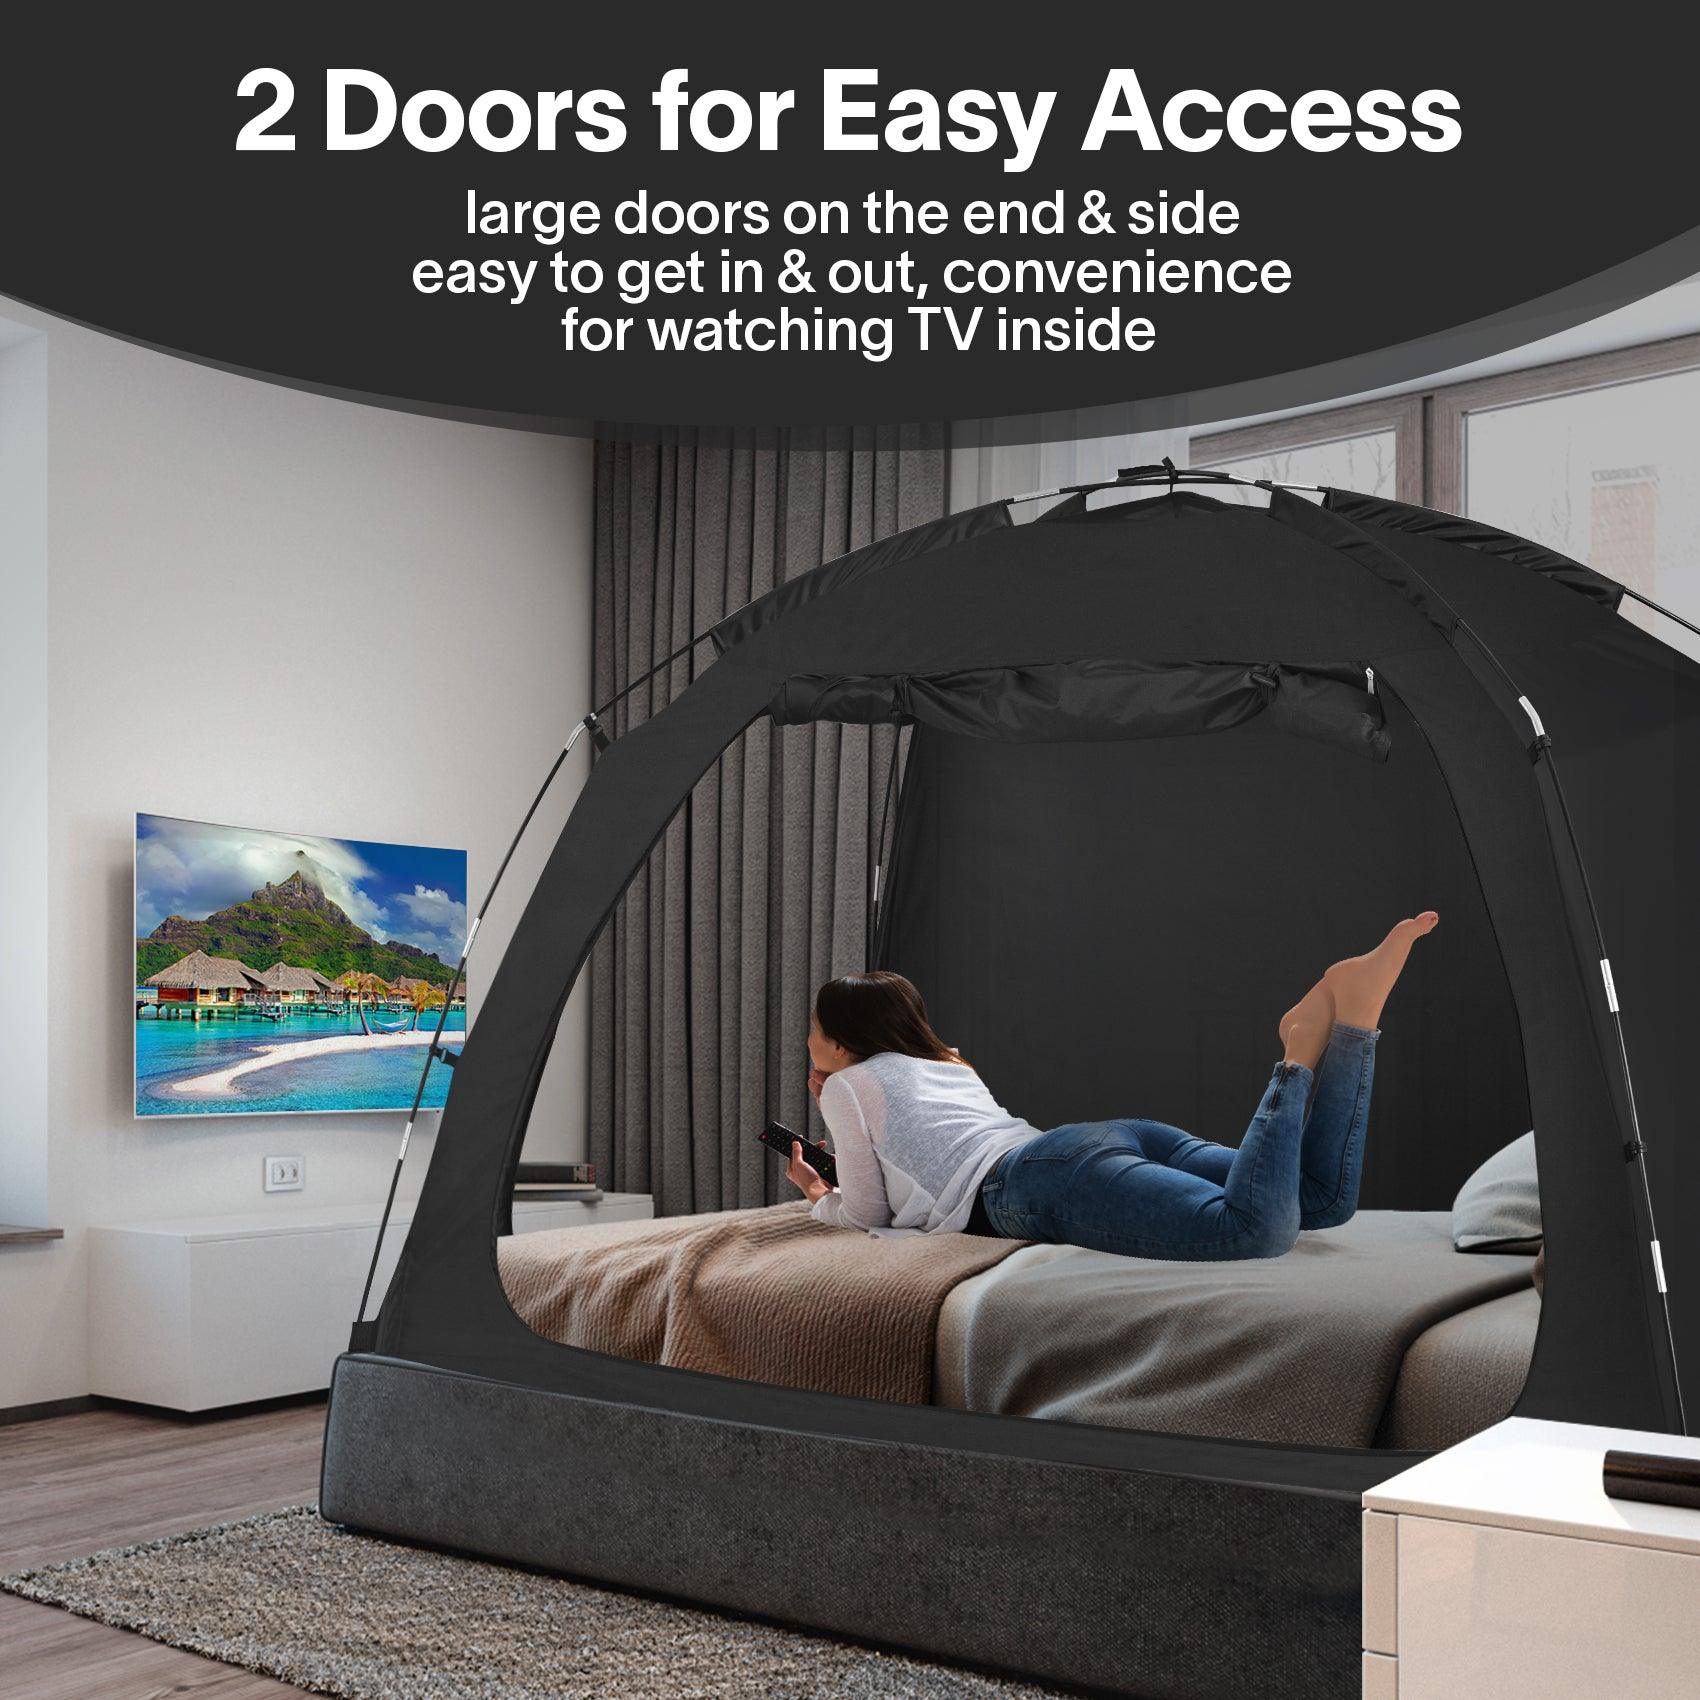 EighteenTek bed tent 2 Doors for Easy Access